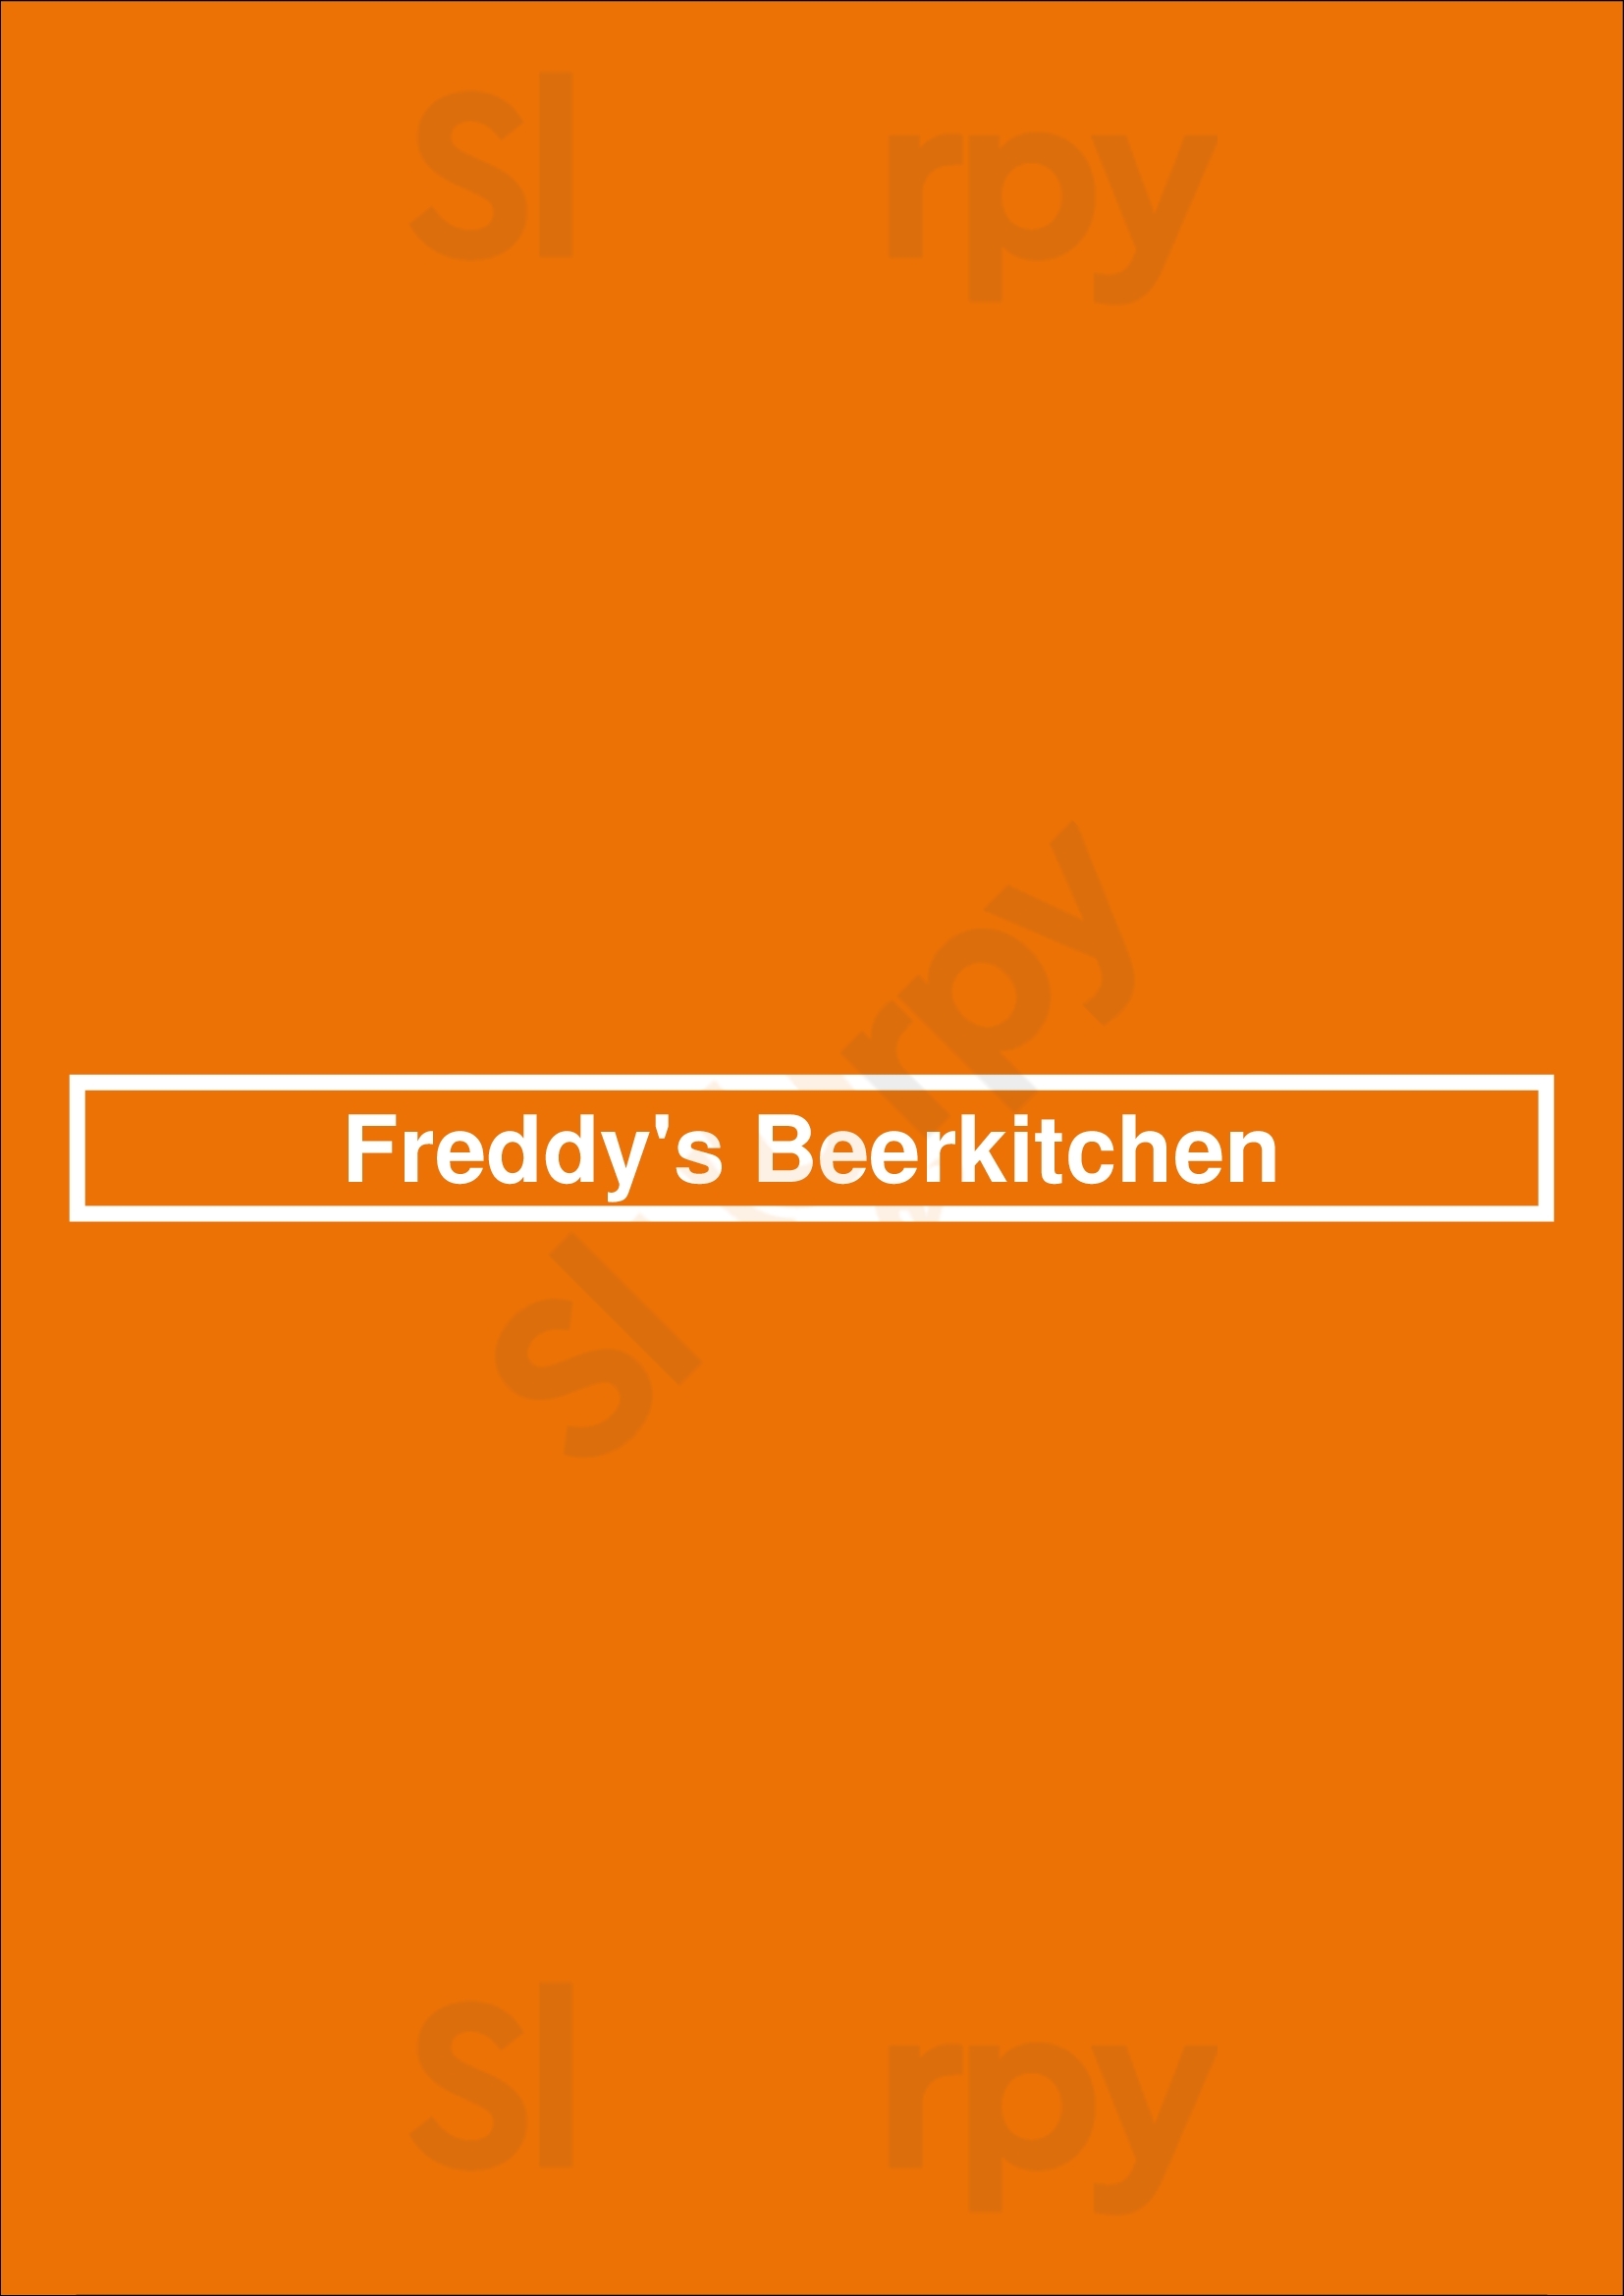 Freddy's Beerkitchen Nijmegen Menu - 1